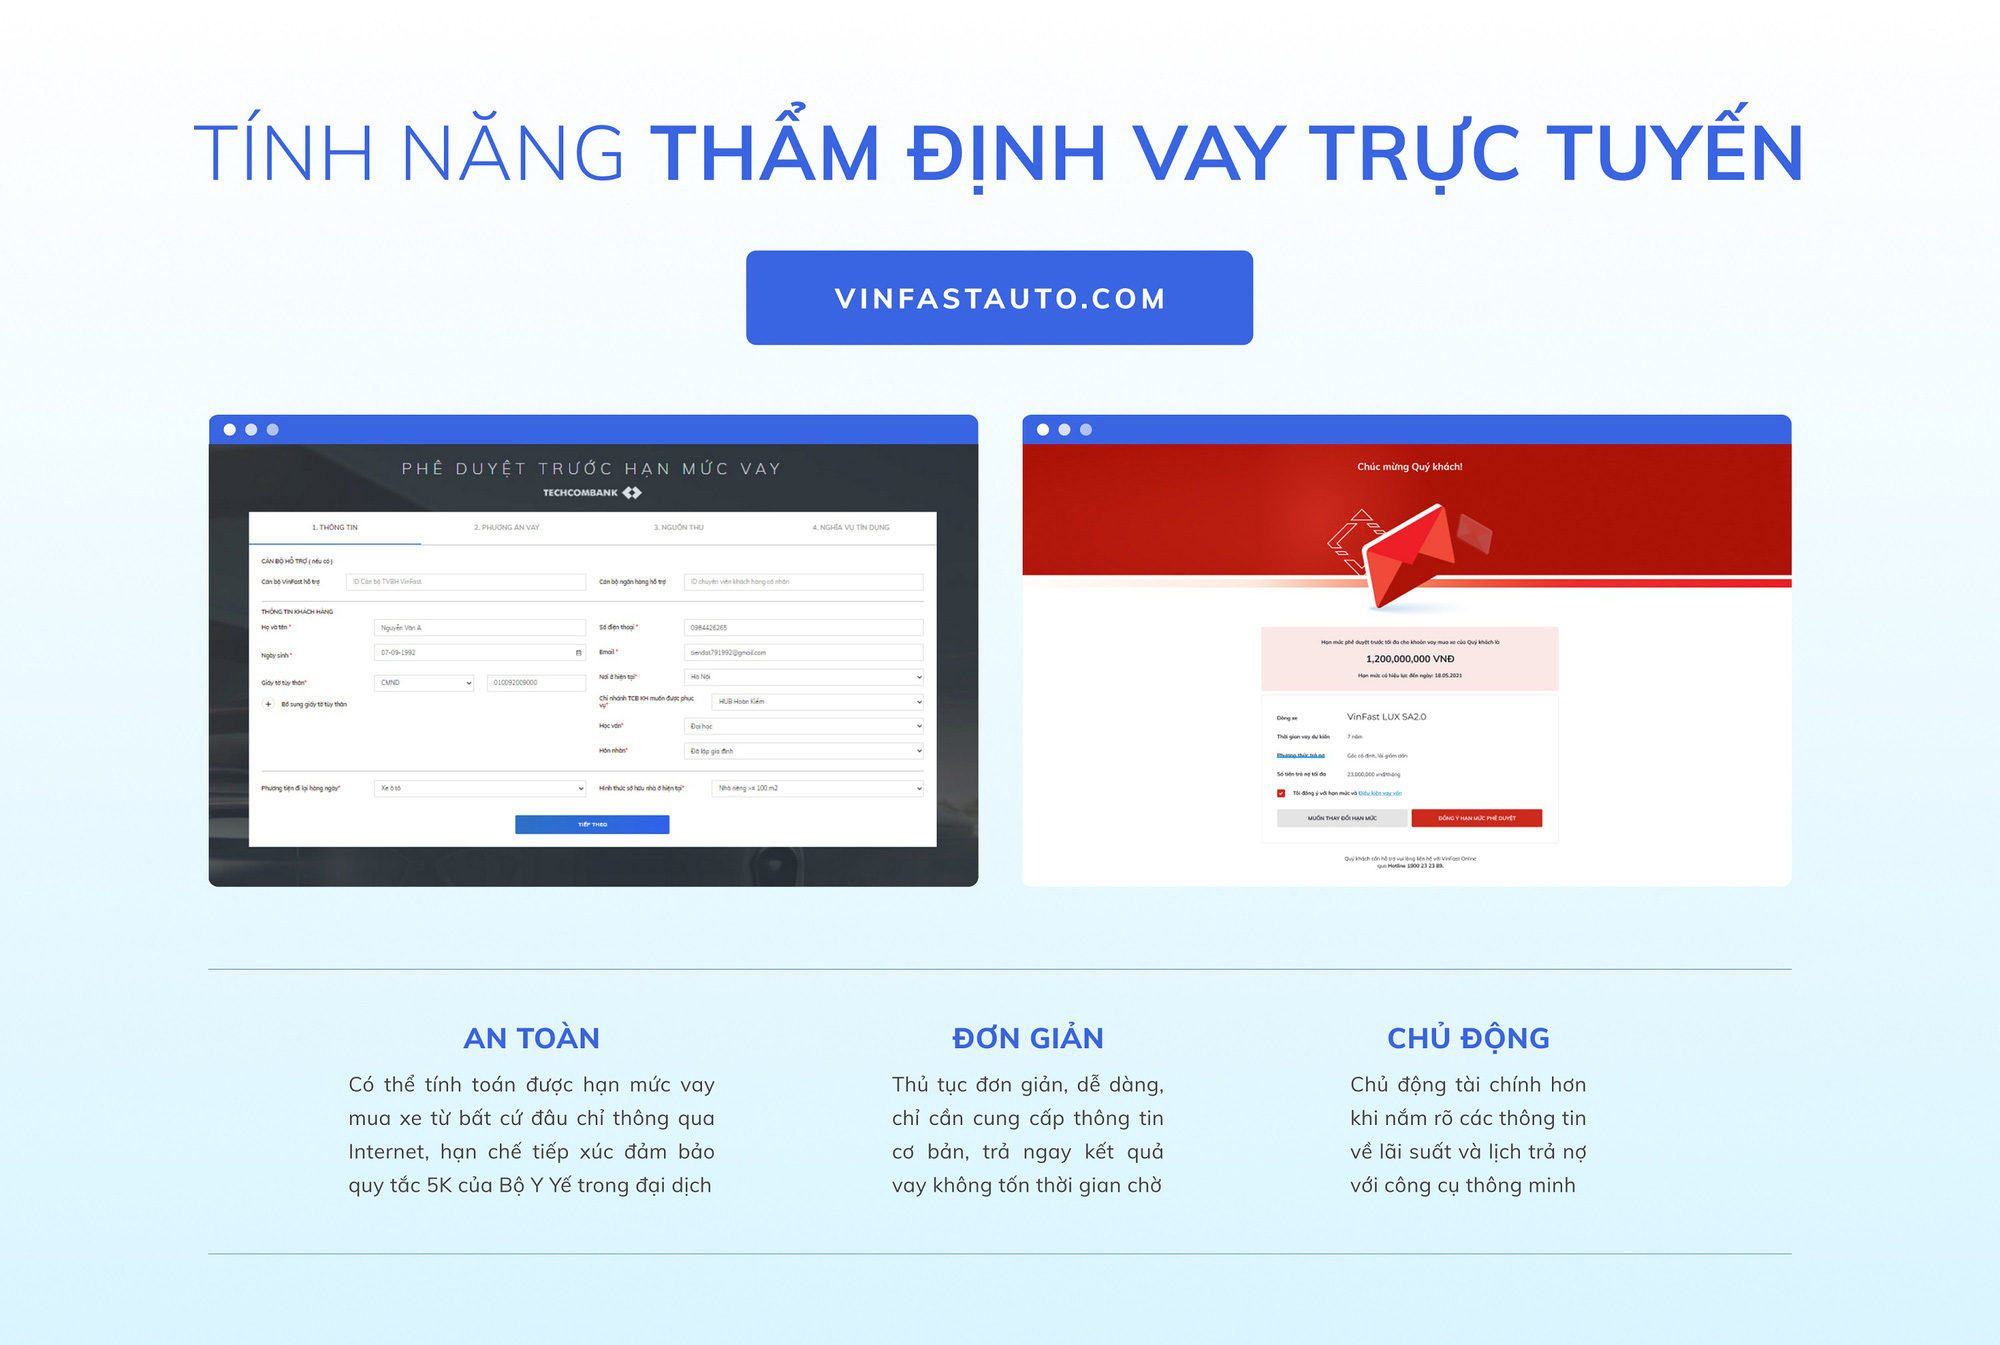 VinFast cung cấp giải pháp mua ô tô trực tuyến đầu tiên tại Việt Nam - Ảnh 3.